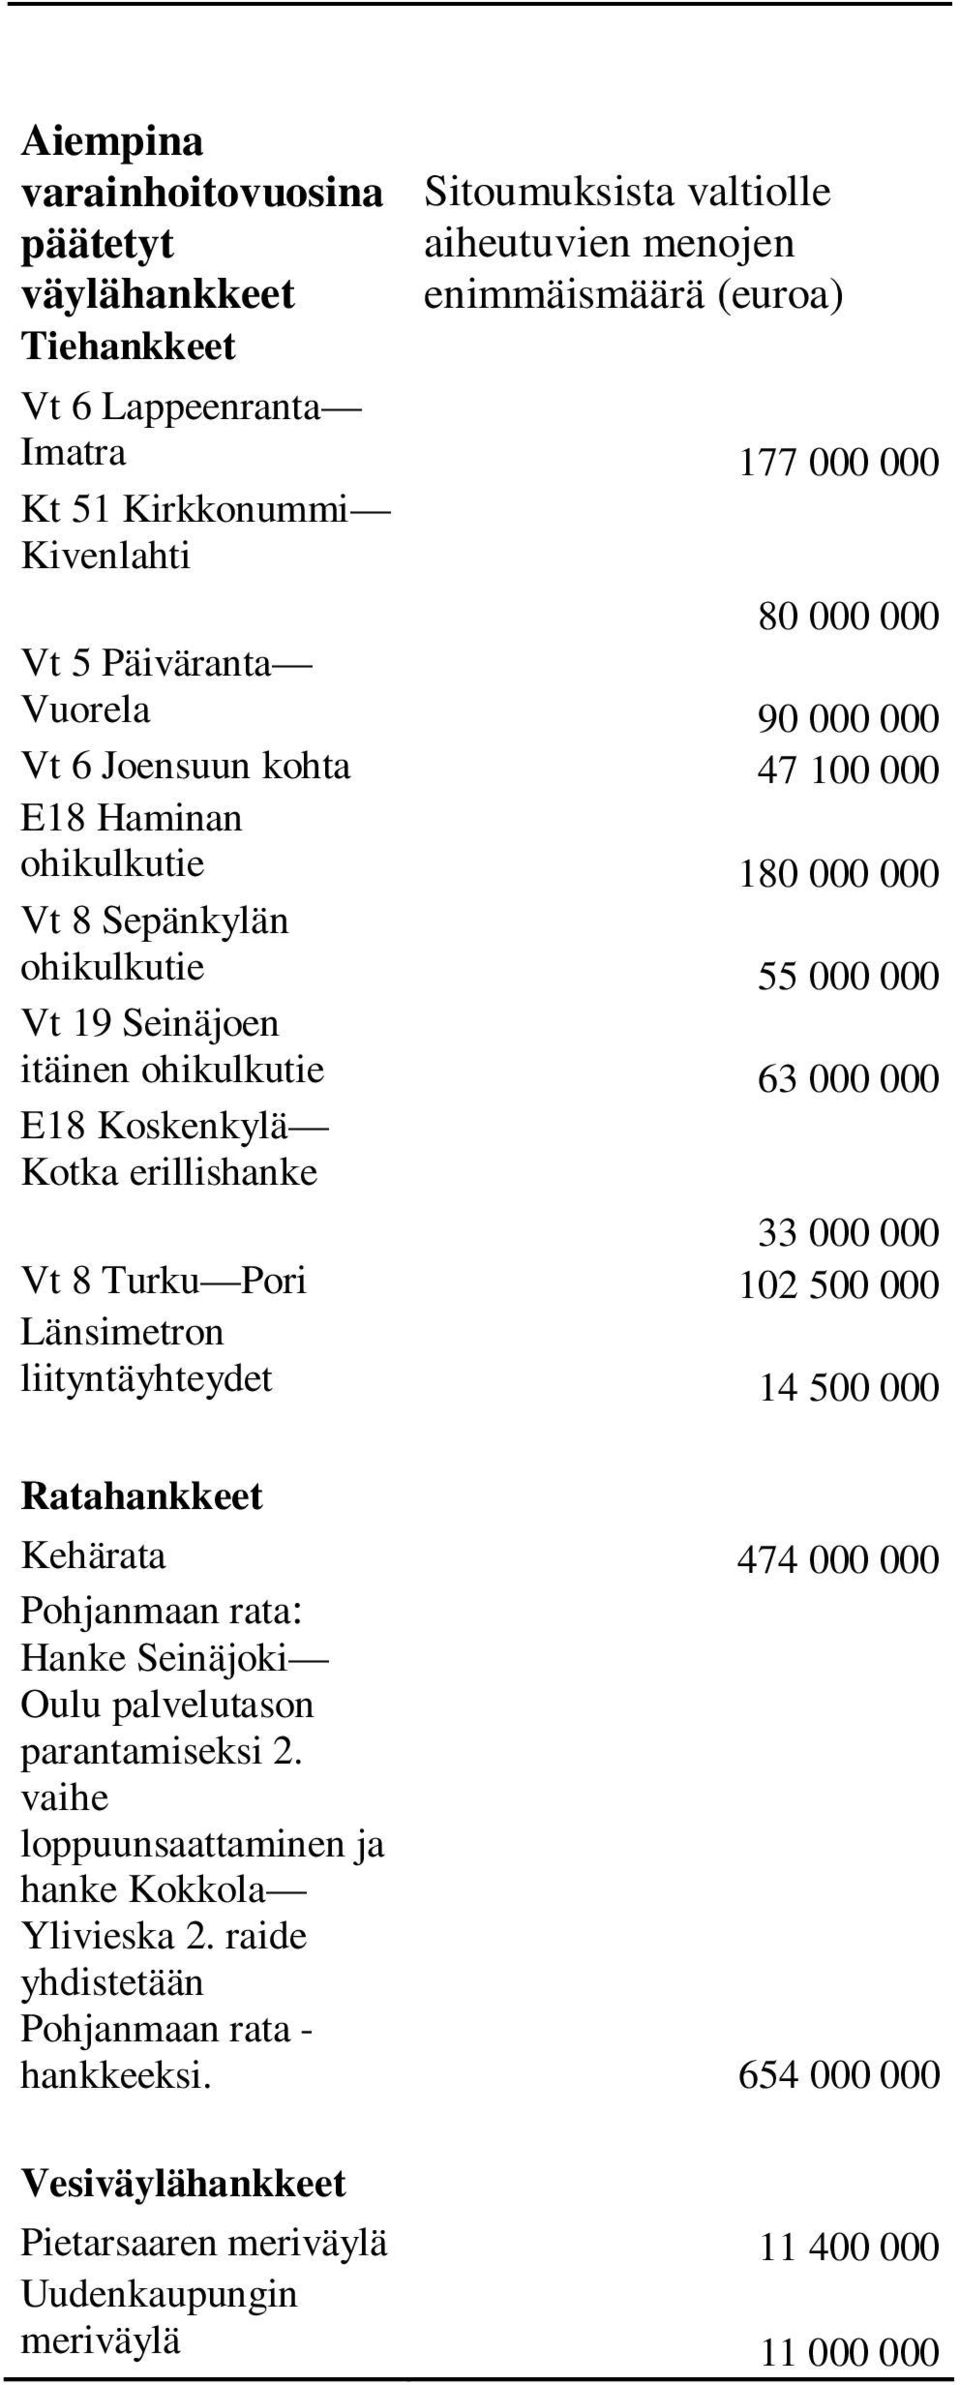 Koskenkylä Kotka erillishanke 33 000 000 Vt 8 Turku Pori 102 500 000 Länsimetron liityntäyhteydet 14 500 000 Ratahankkeet Kehärata 474 000 000 Pohjanmaan rata: Hanke Seinäjoki Oulu palvelutason